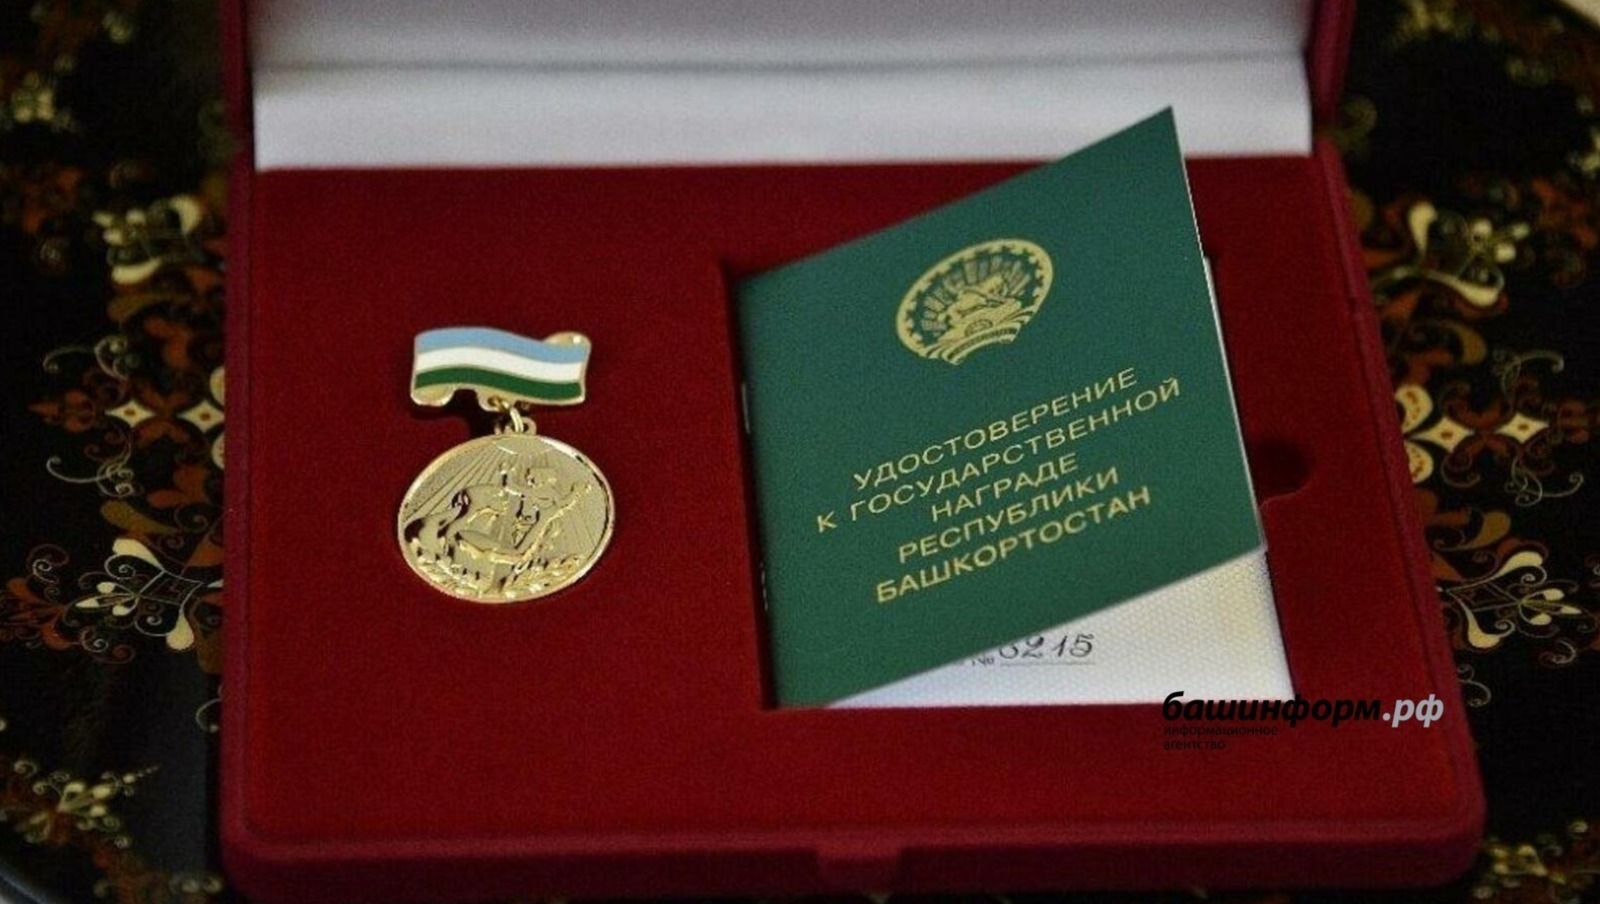 Пятьдесят многодетных матерей Башкирии награждены медалями «Материнская слава»